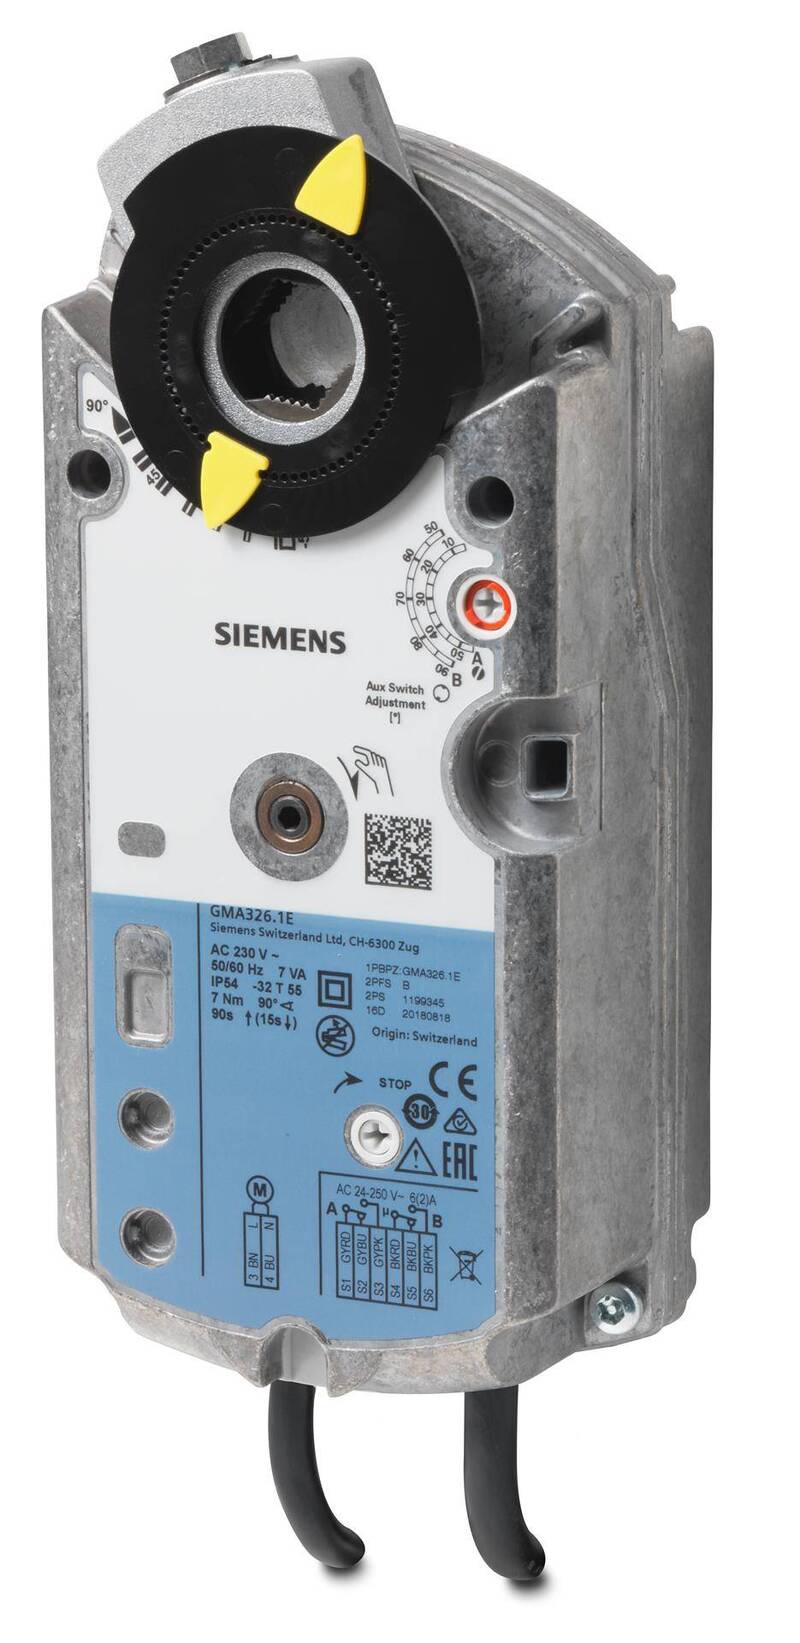 Купить привод GMA 326.1 E Siemens в Москве